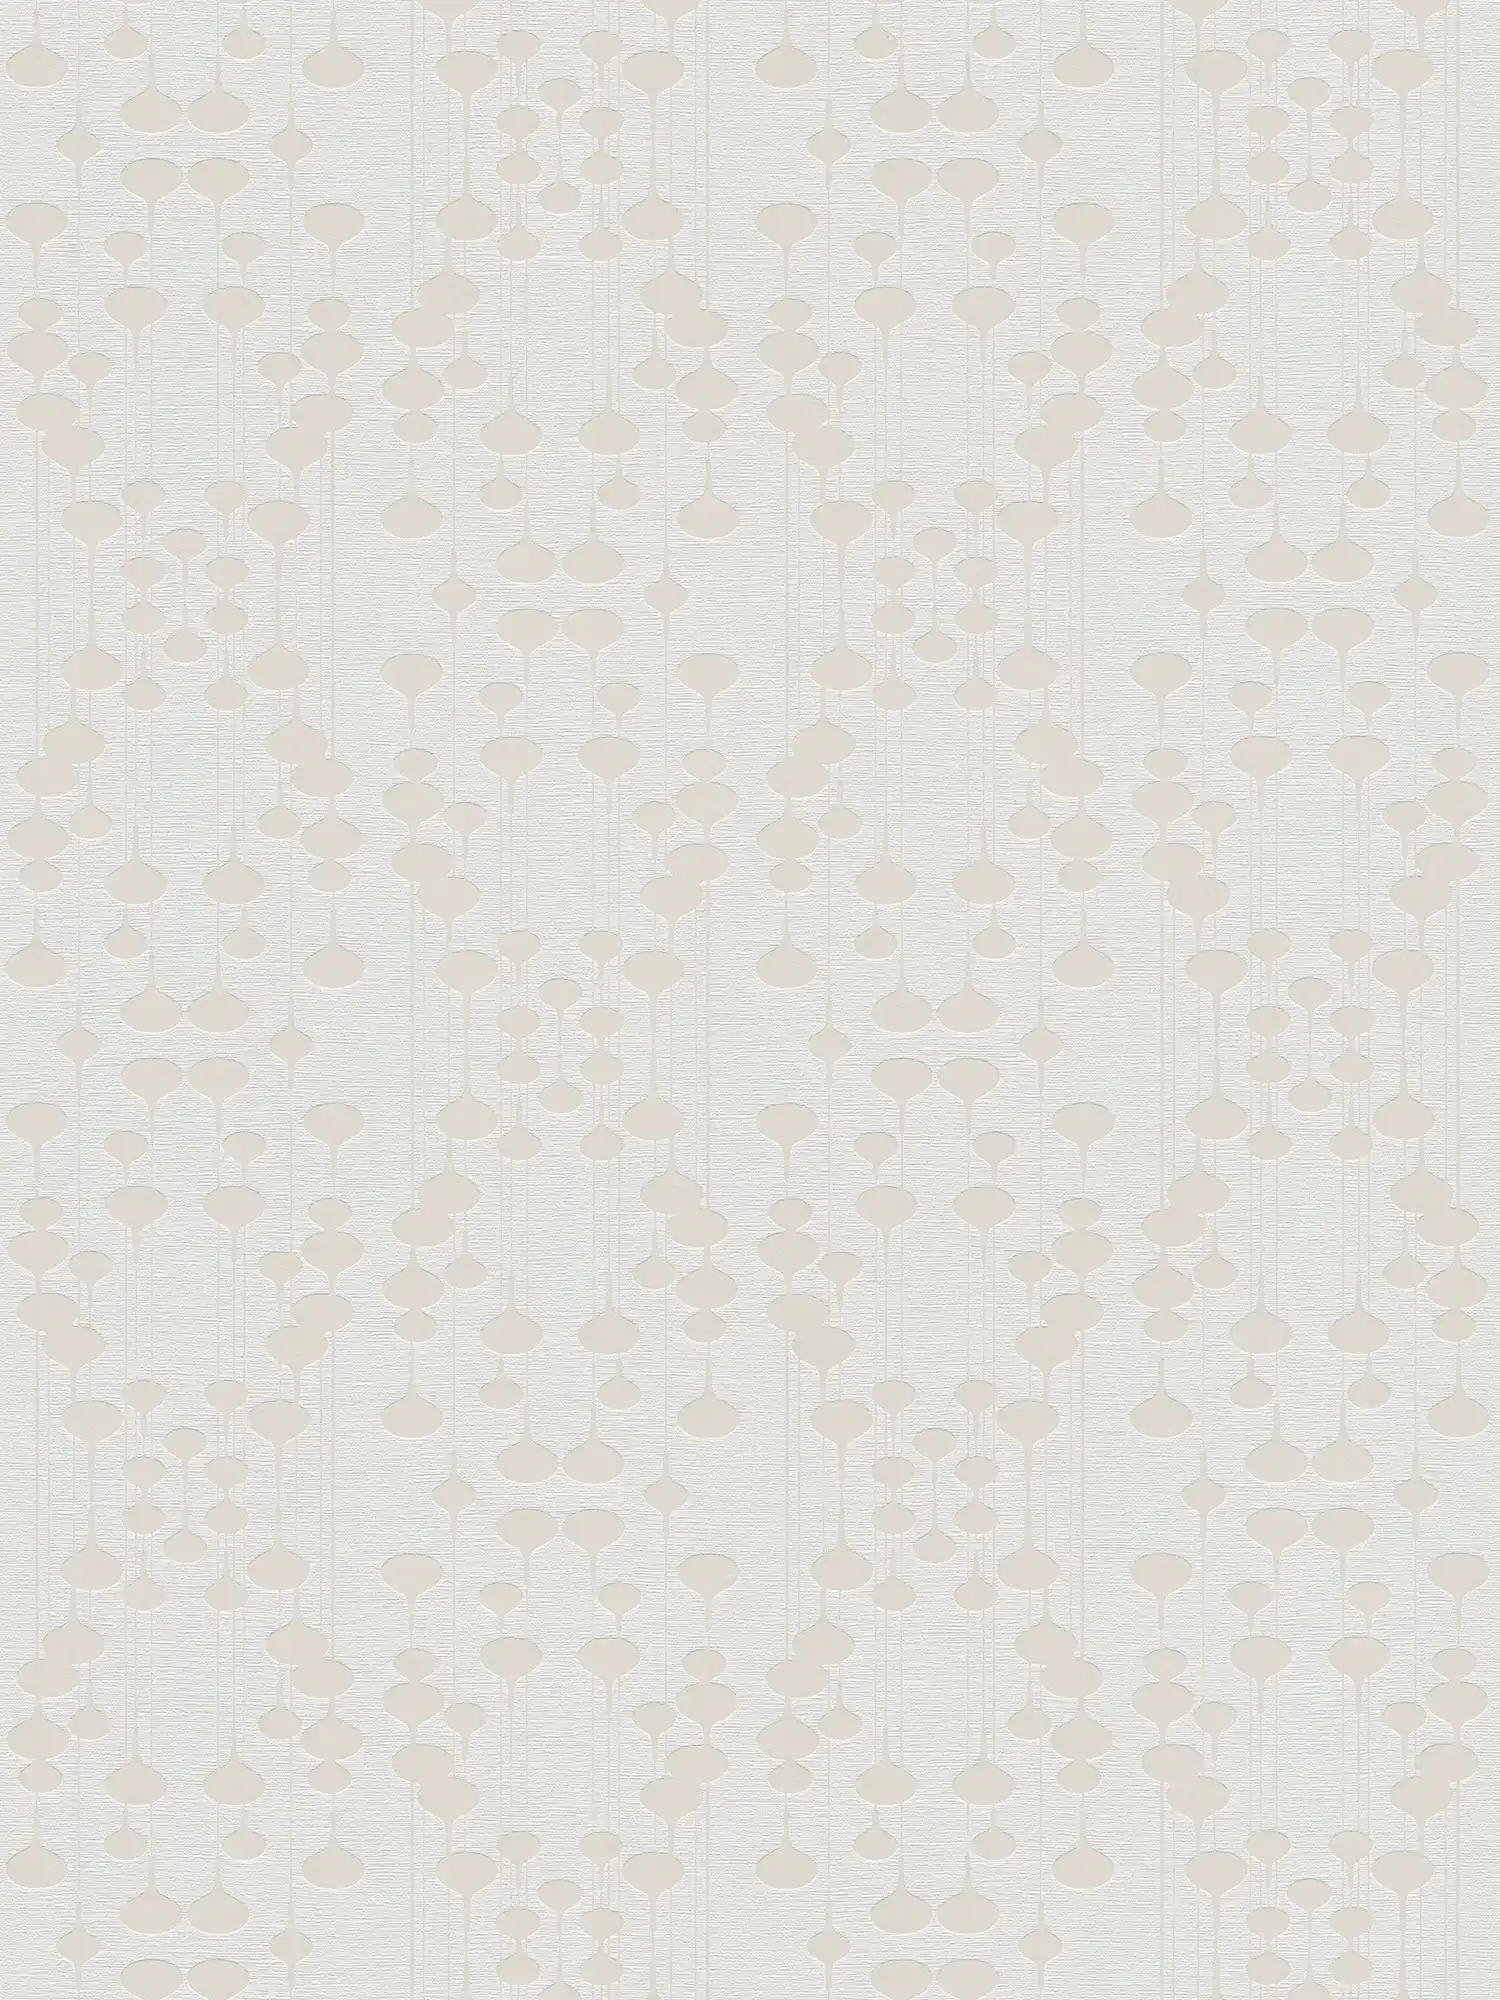 Non-woven wallpaper with retro design & metallic effect - white, beige
